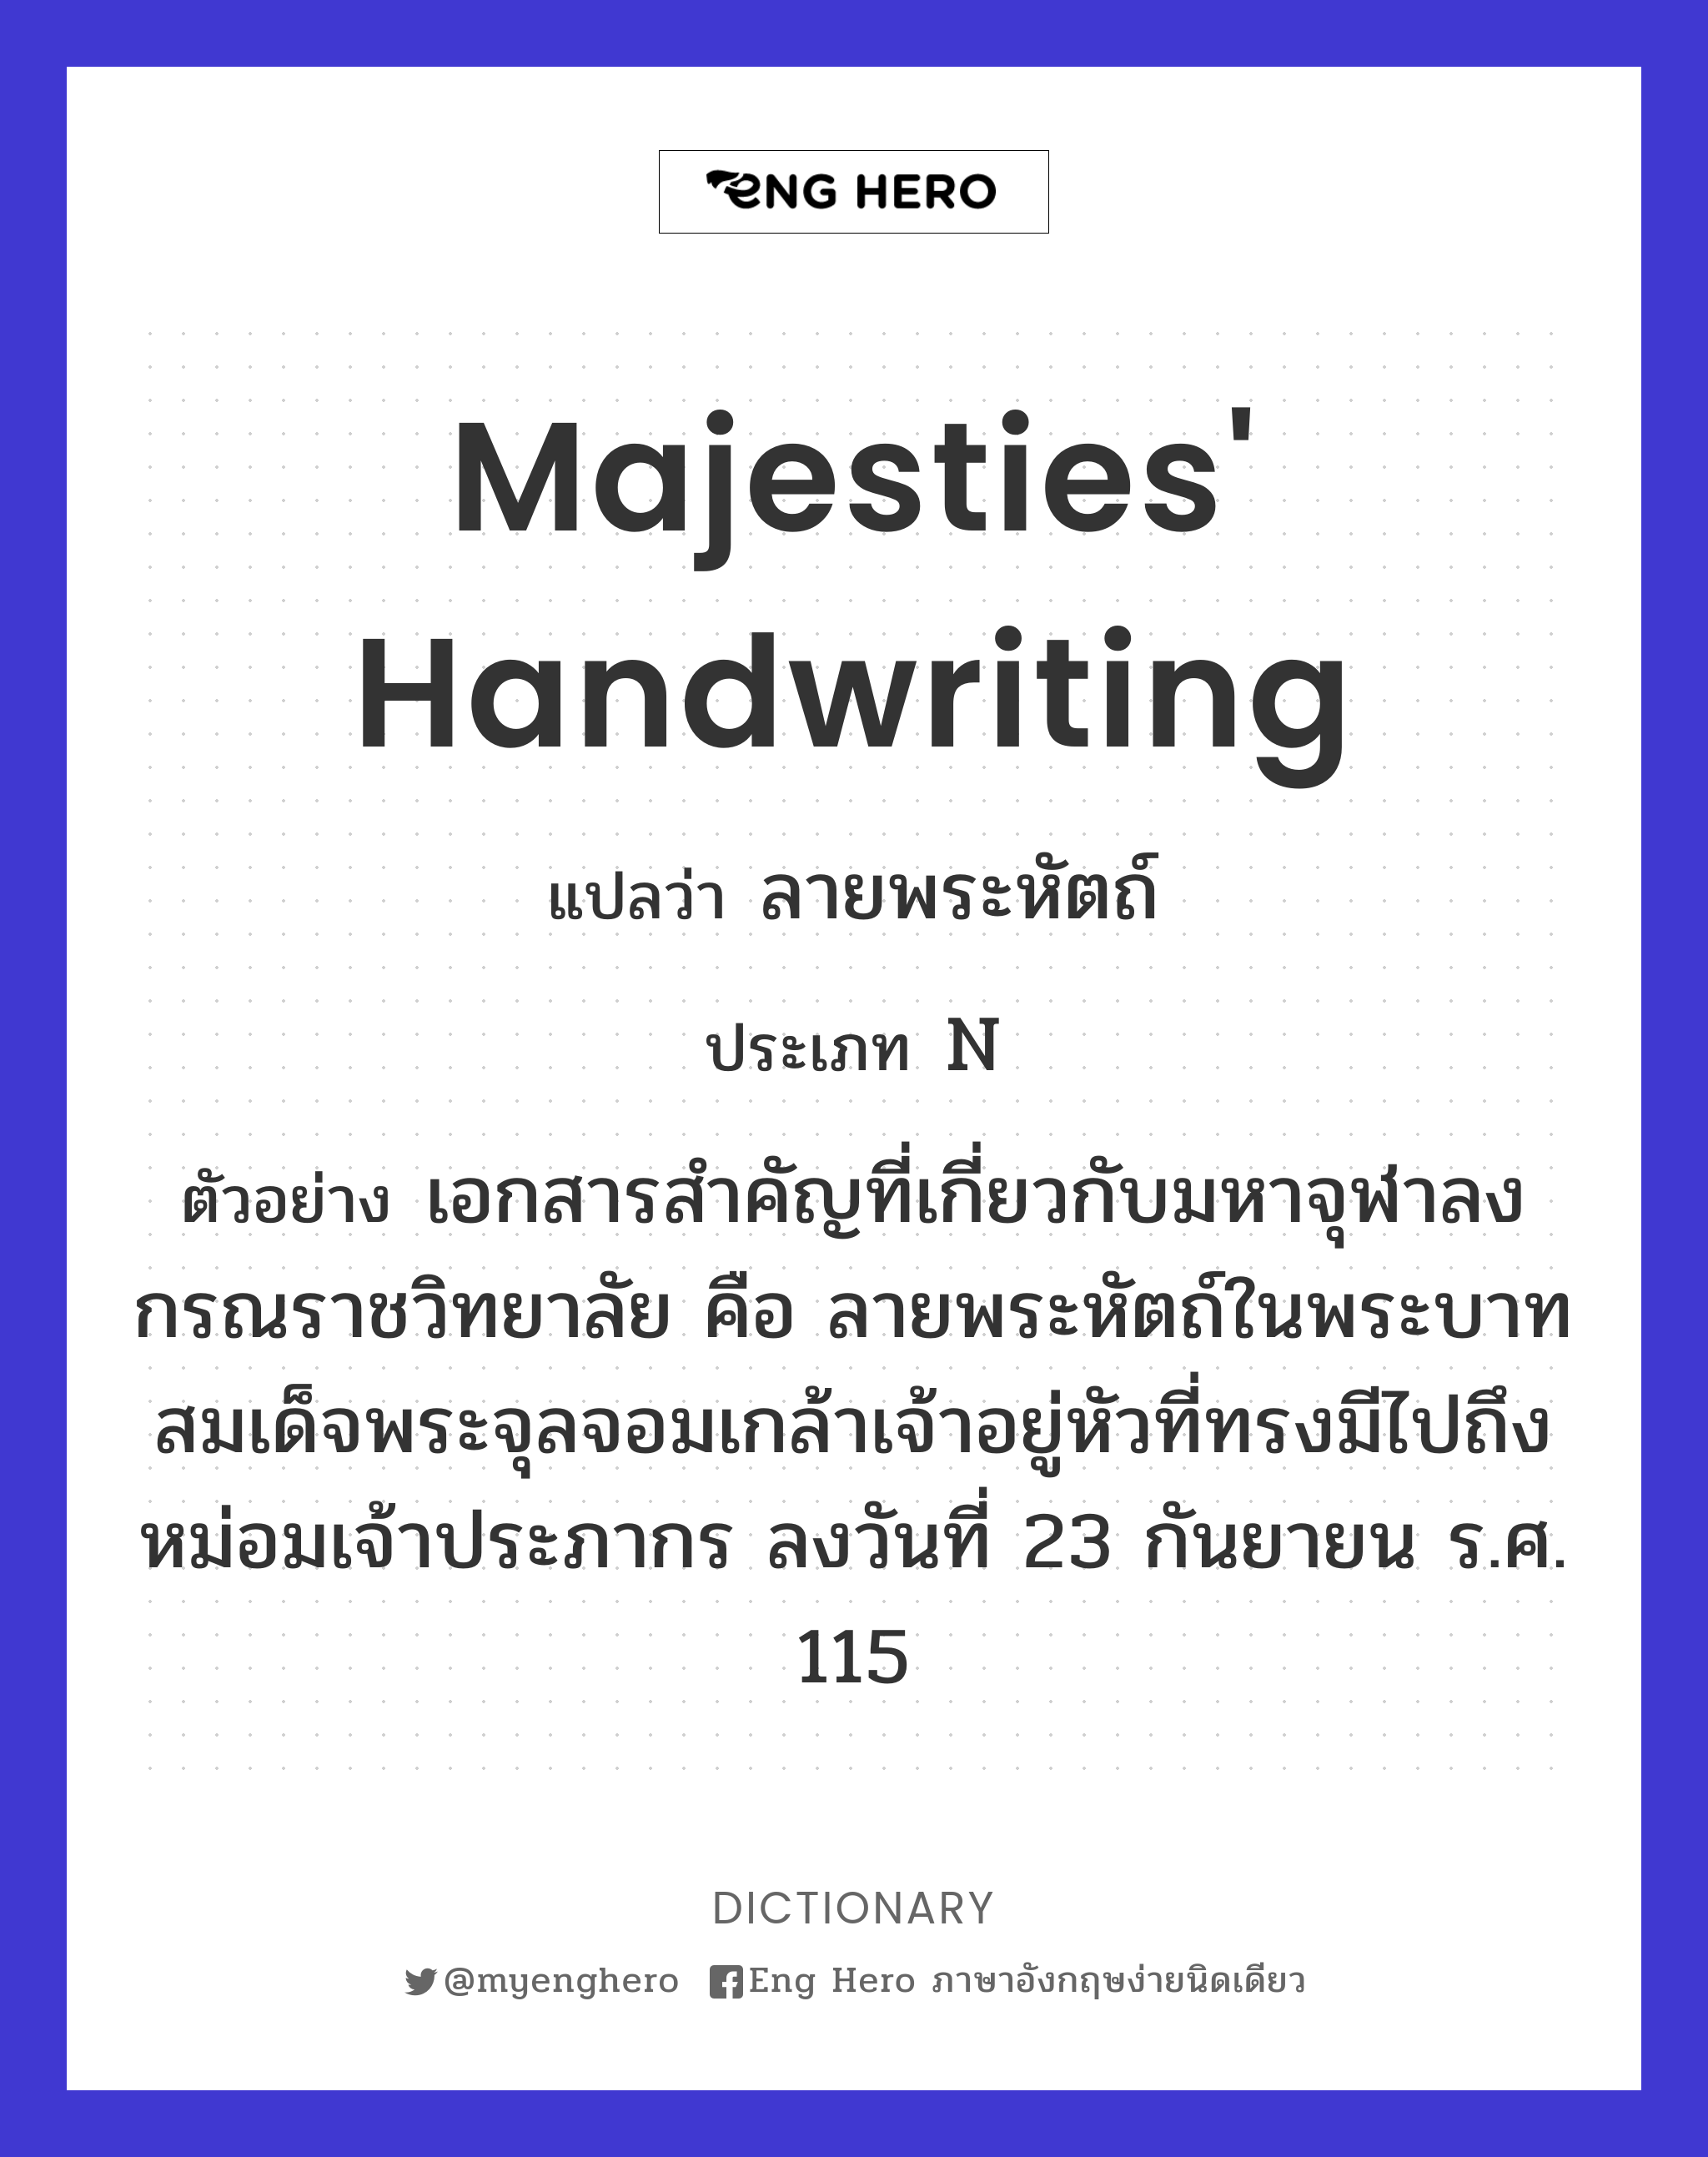 majesties' handwriting